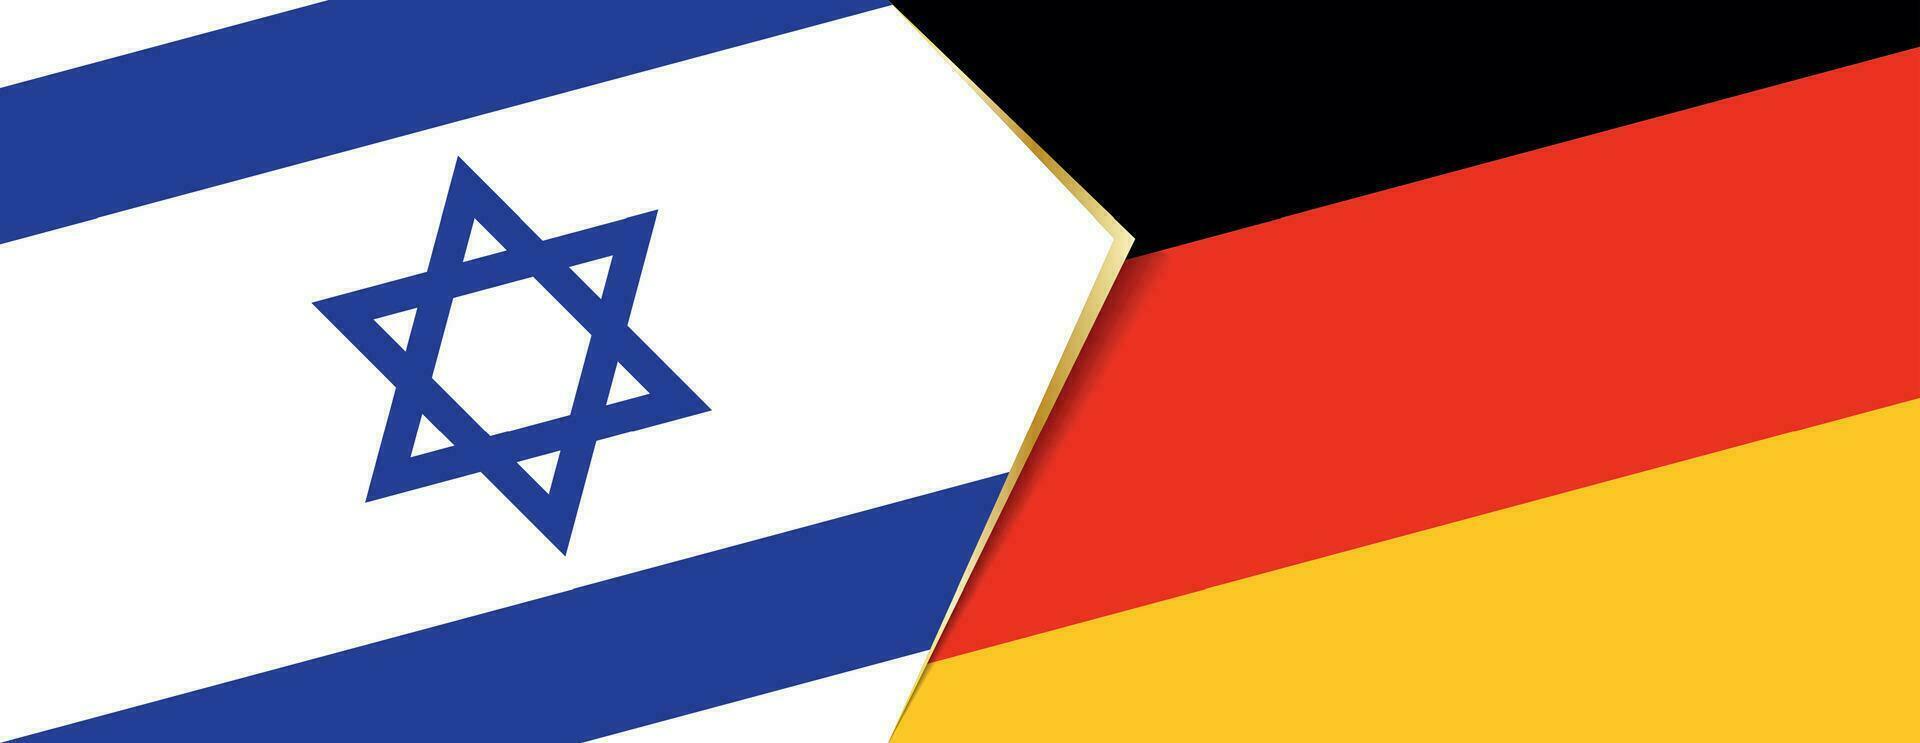 Israel y Alemania banderas, dos vector banderas